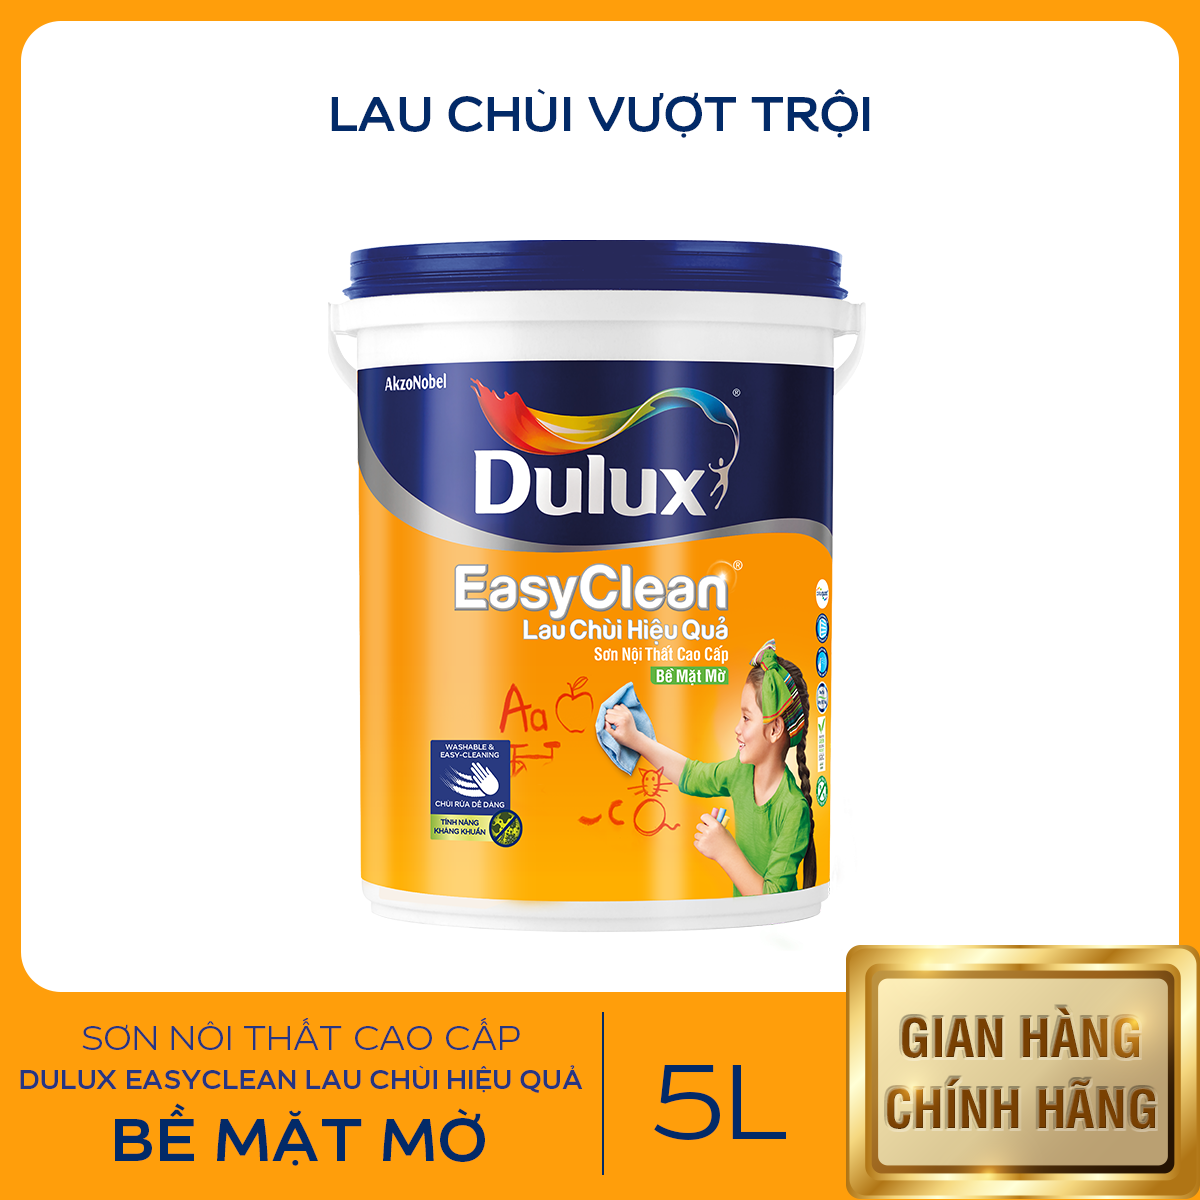 Sơn nội thất - Cao cấp - Dulux EasyClean Lau Chùi Hiệu Quả - Bề mặt mờ - 5L